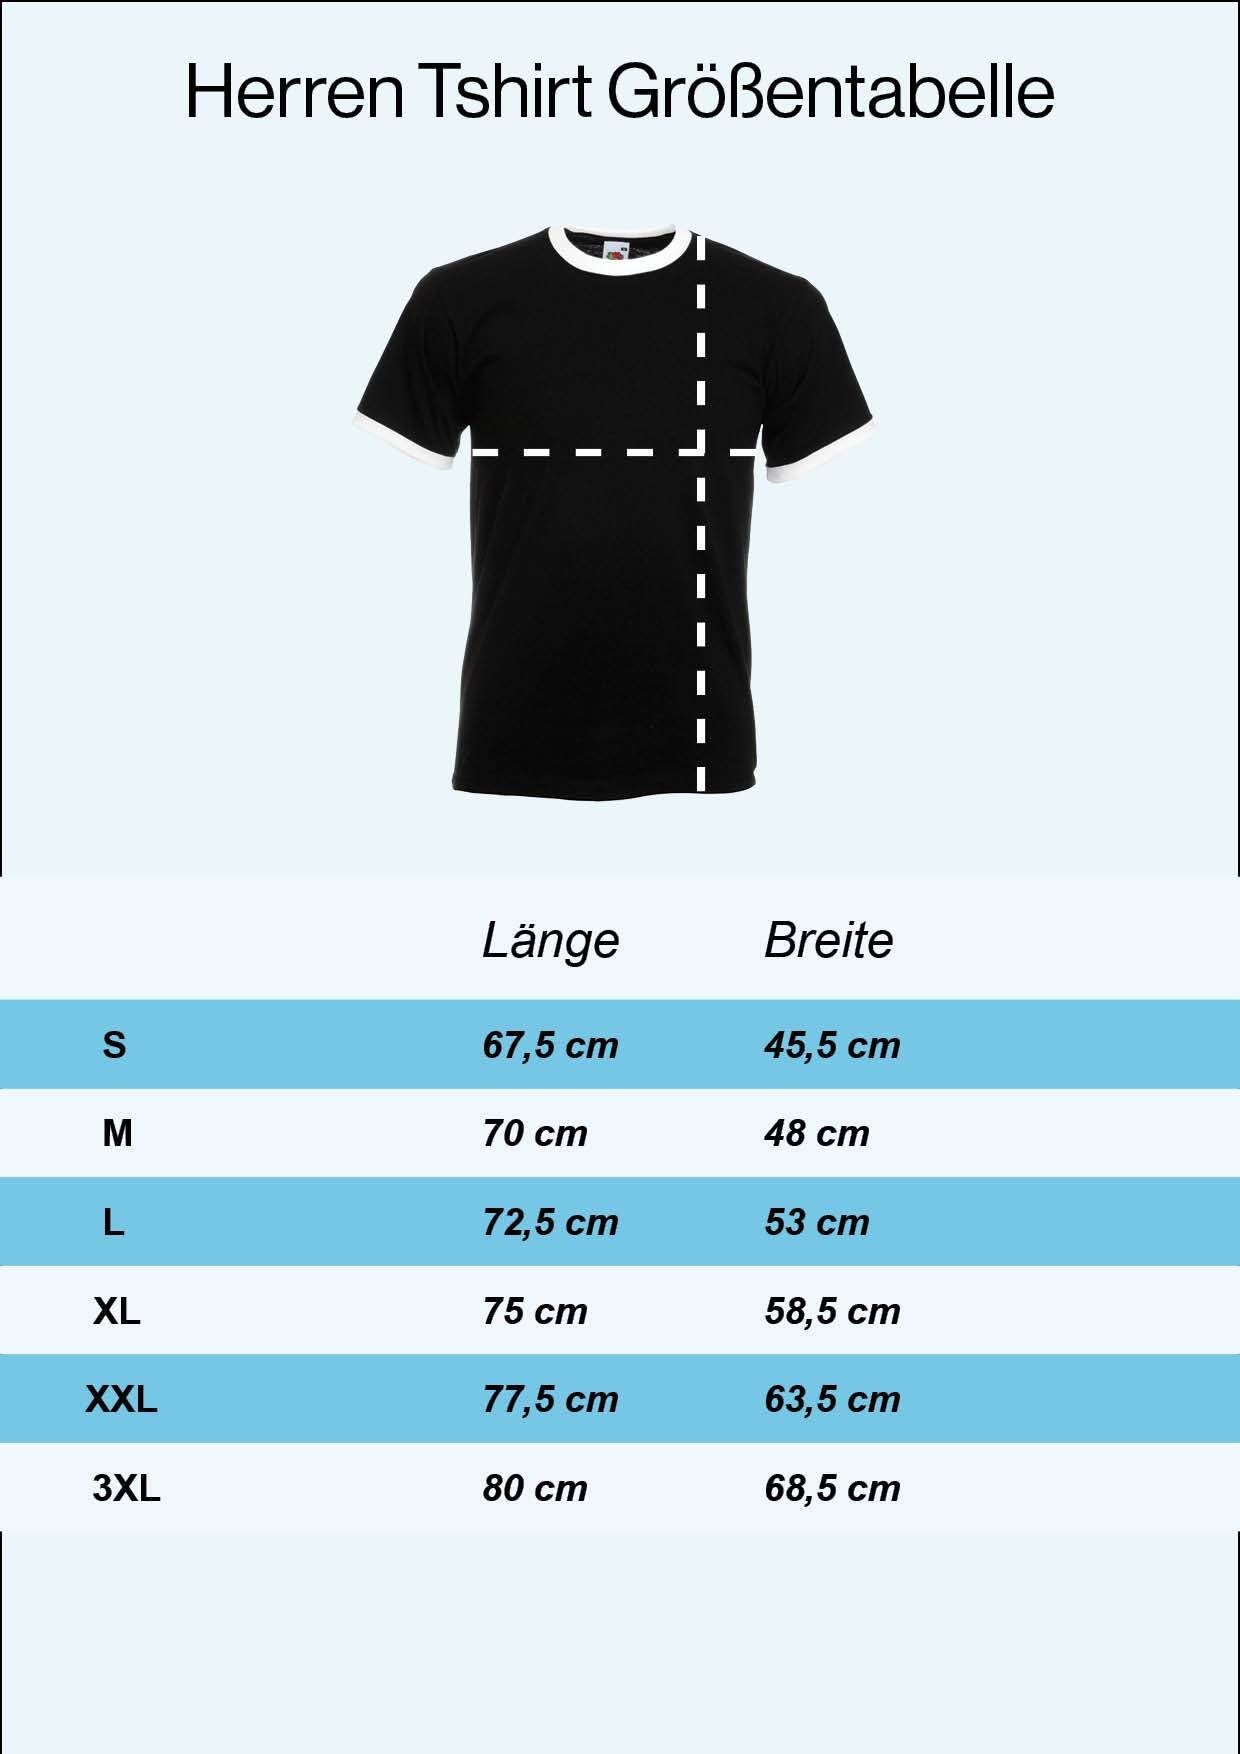 Fußball Trikot mit Look Designz modischem T-Shirt Schwarz Frontprint Retro Shirt Youth Deutschland